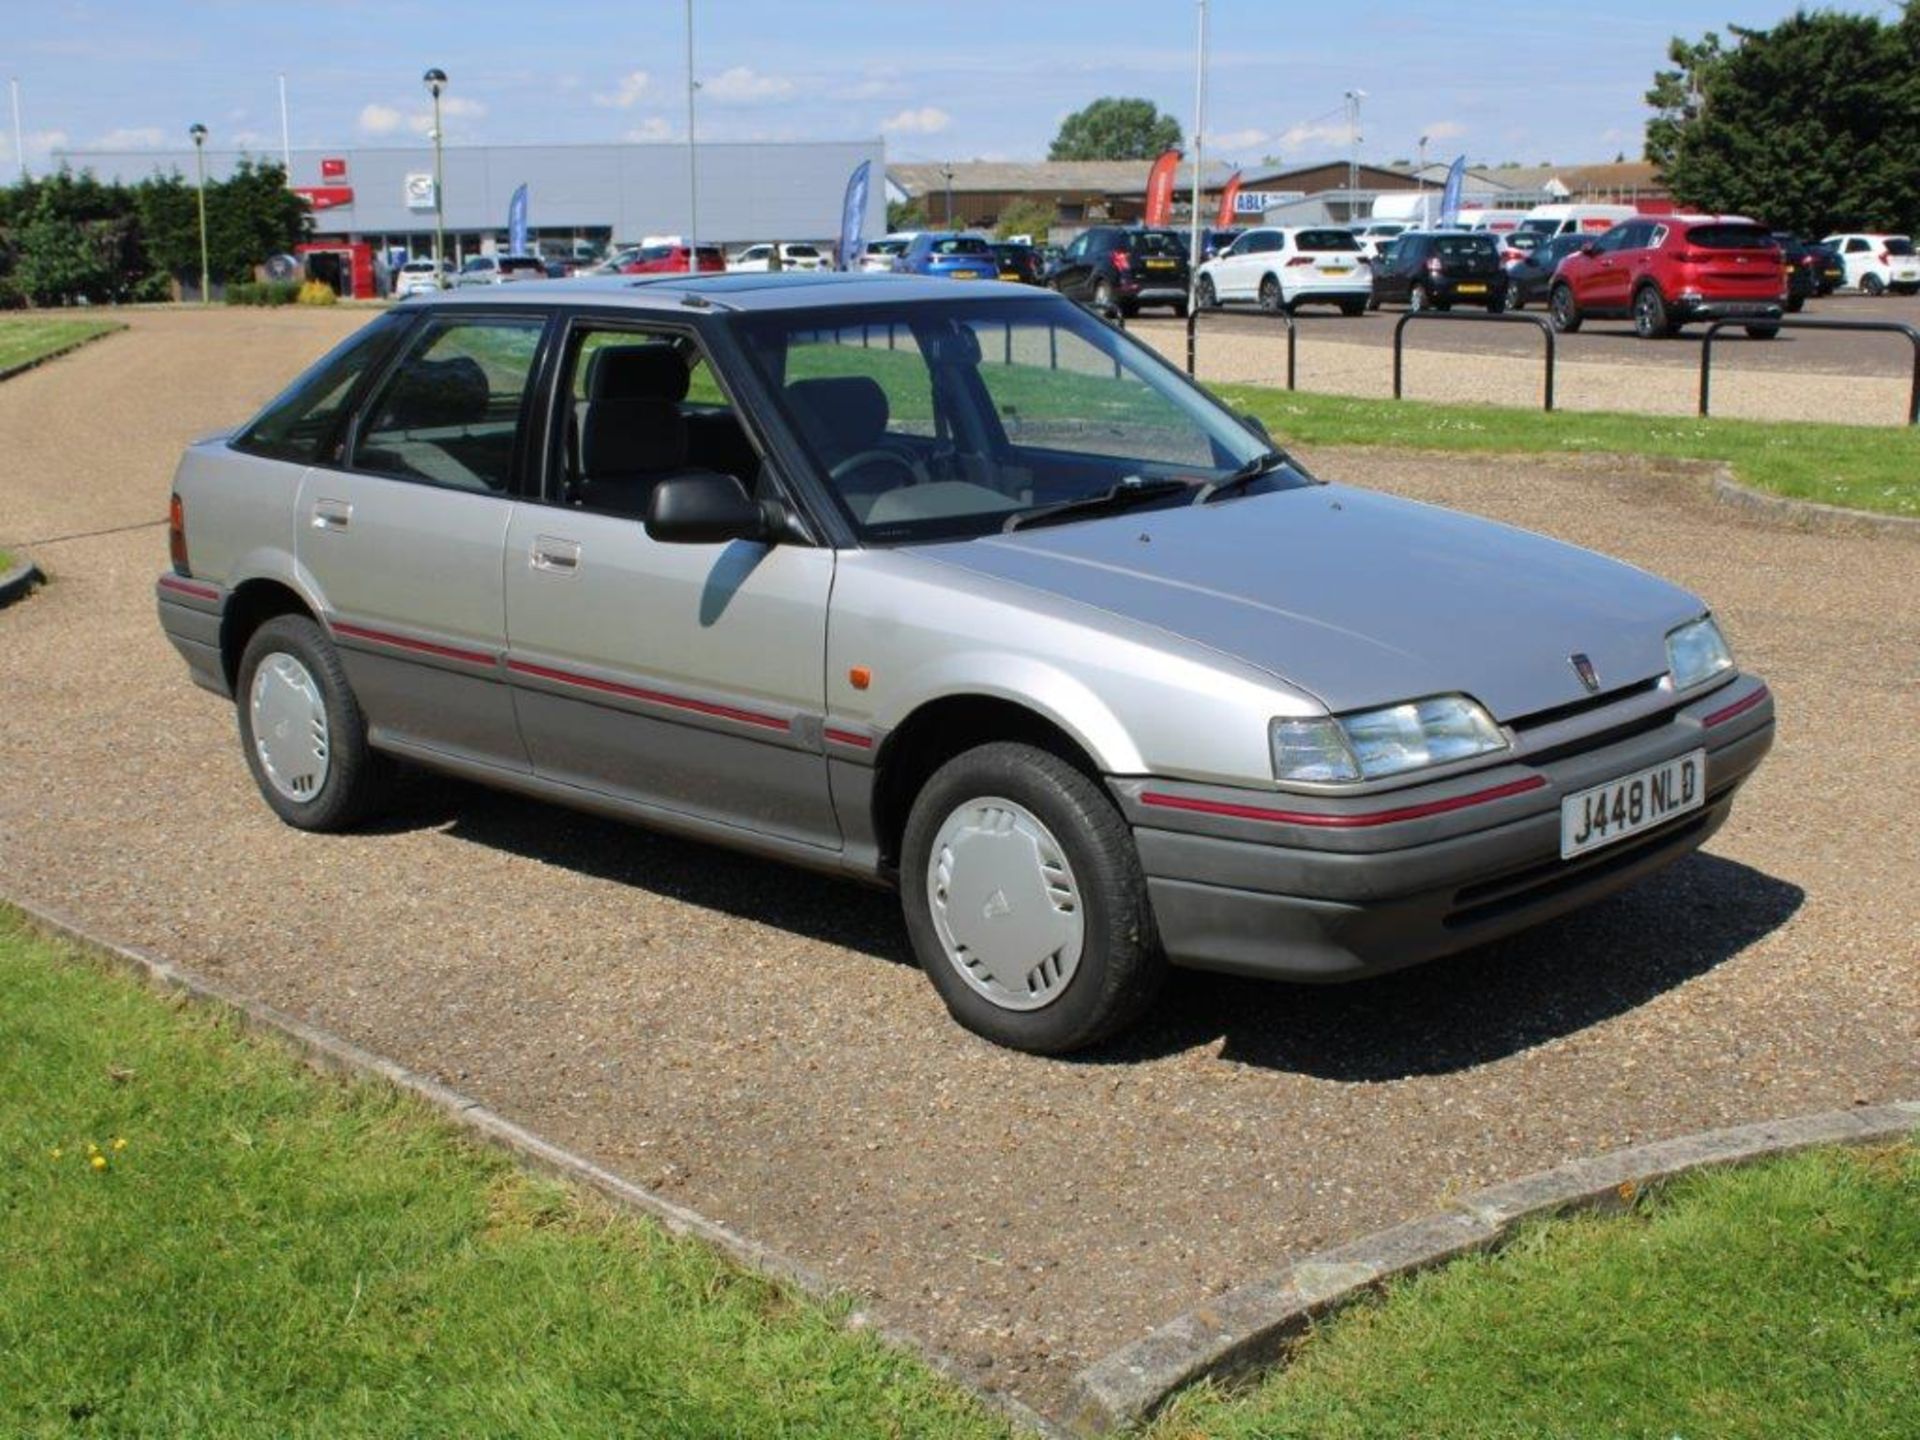 1992 Rover 216 GSi Auto - Image 3 of 24